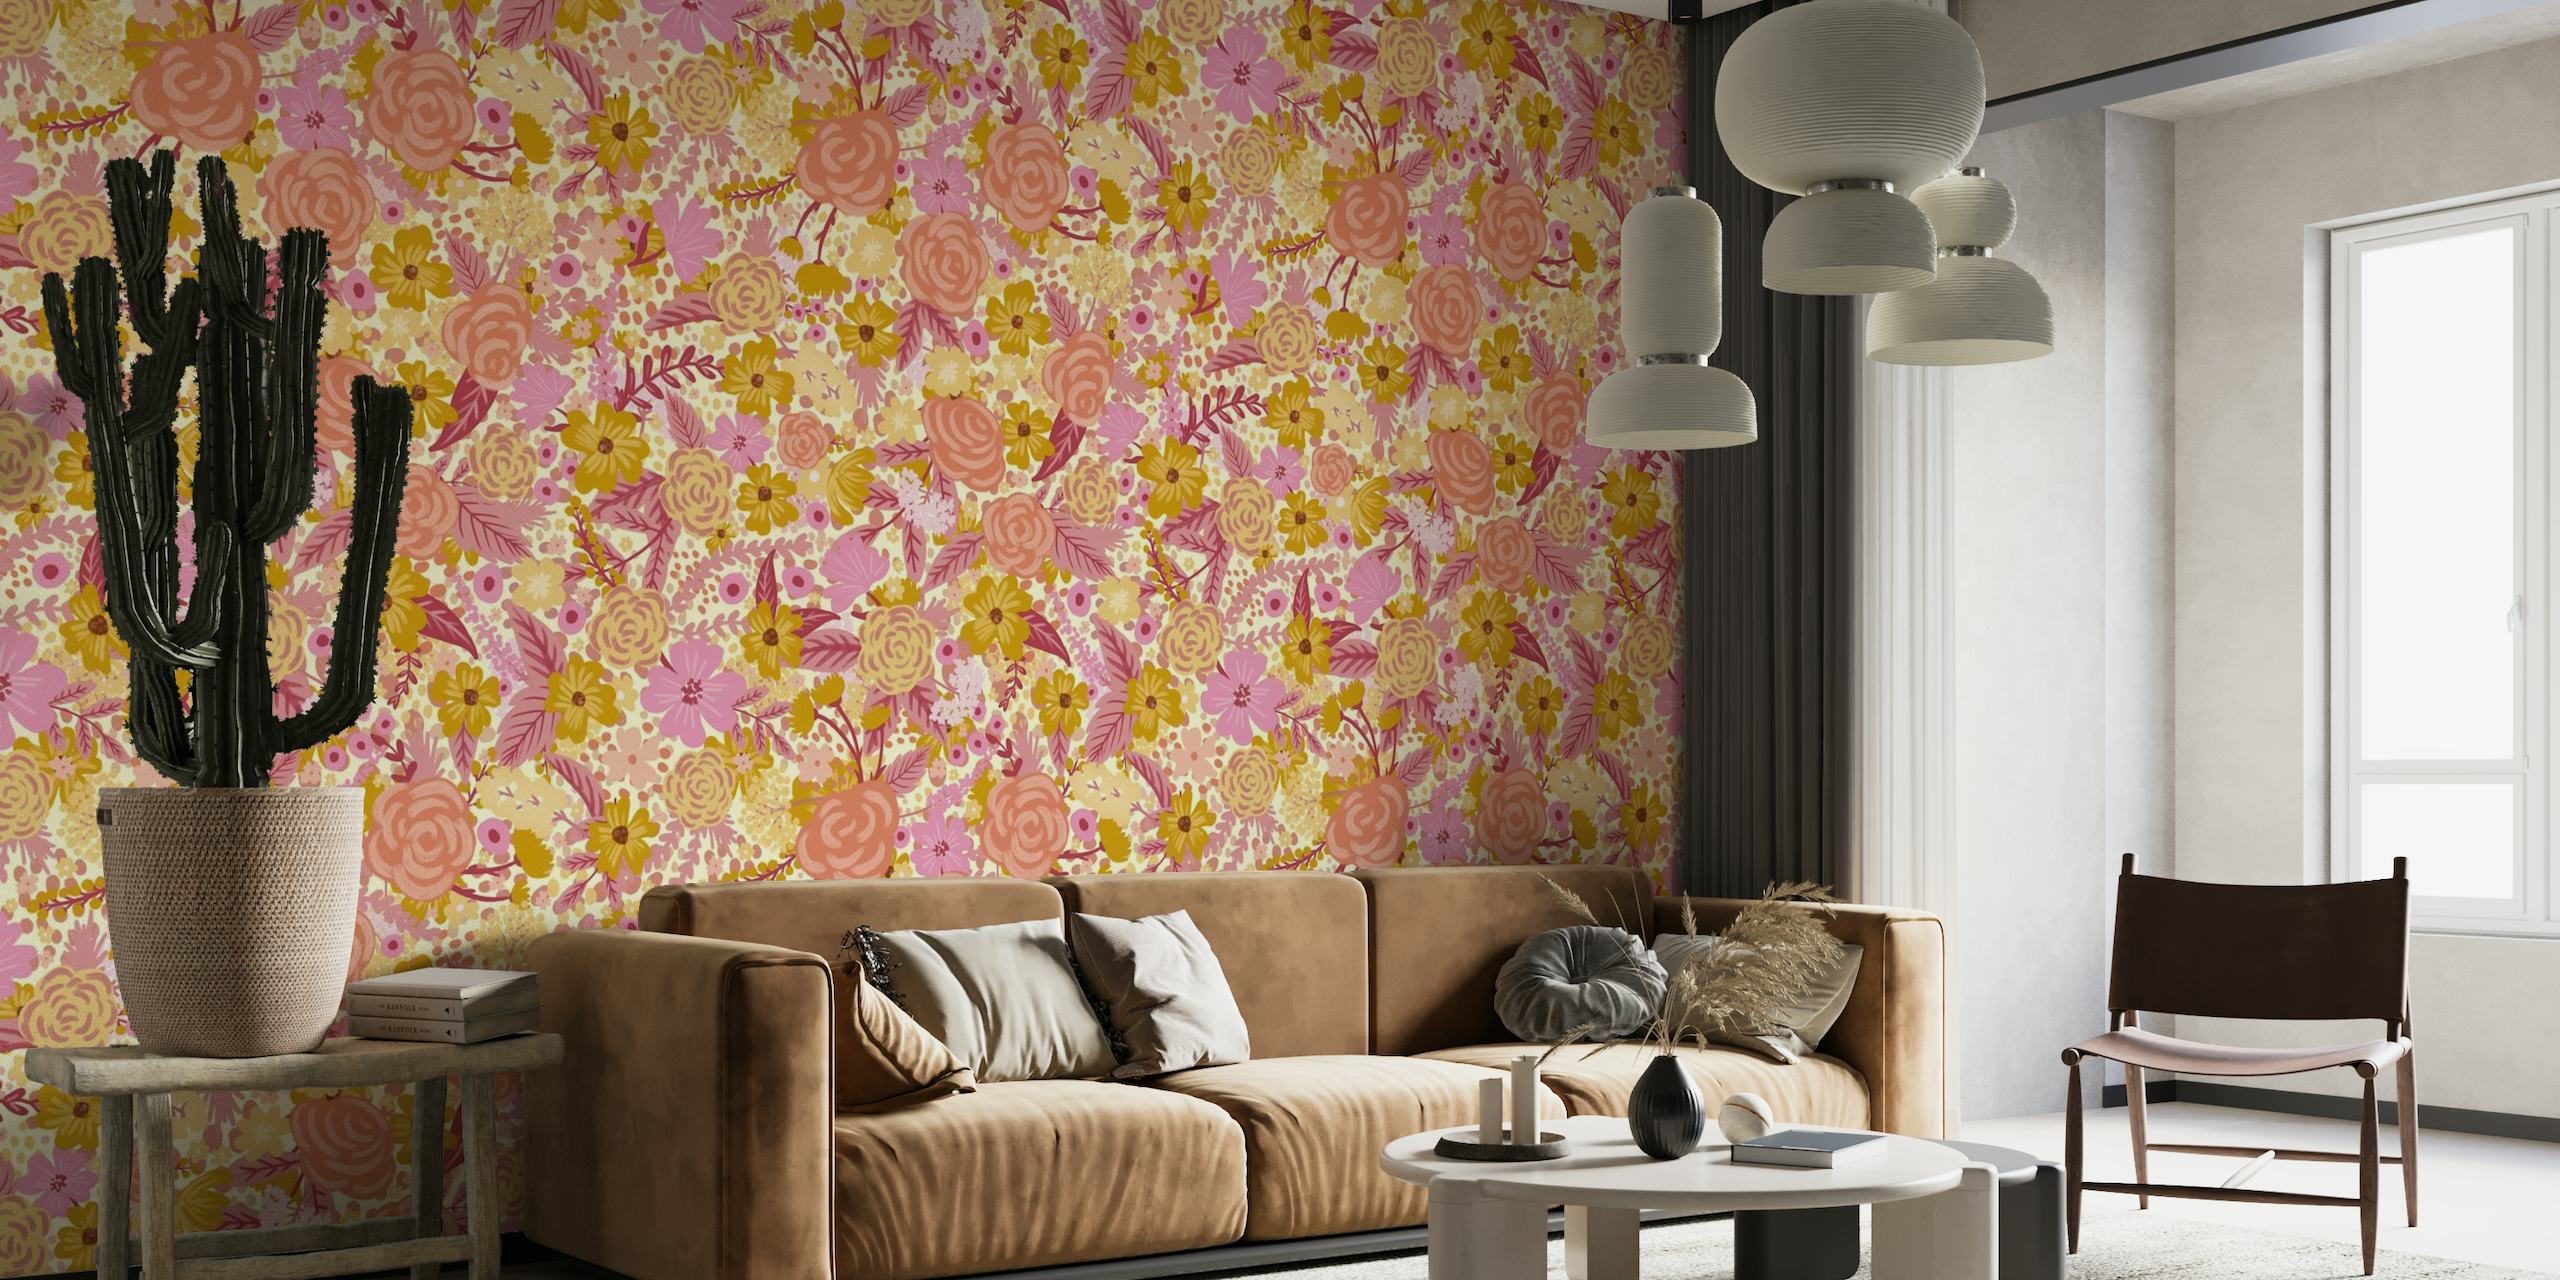 Apstraktni cvjetni zidni mural s nježno ružičastim, zlatnim i neutralnim tonovima, s ružama i tratinčicama u neopipljivom uzorku